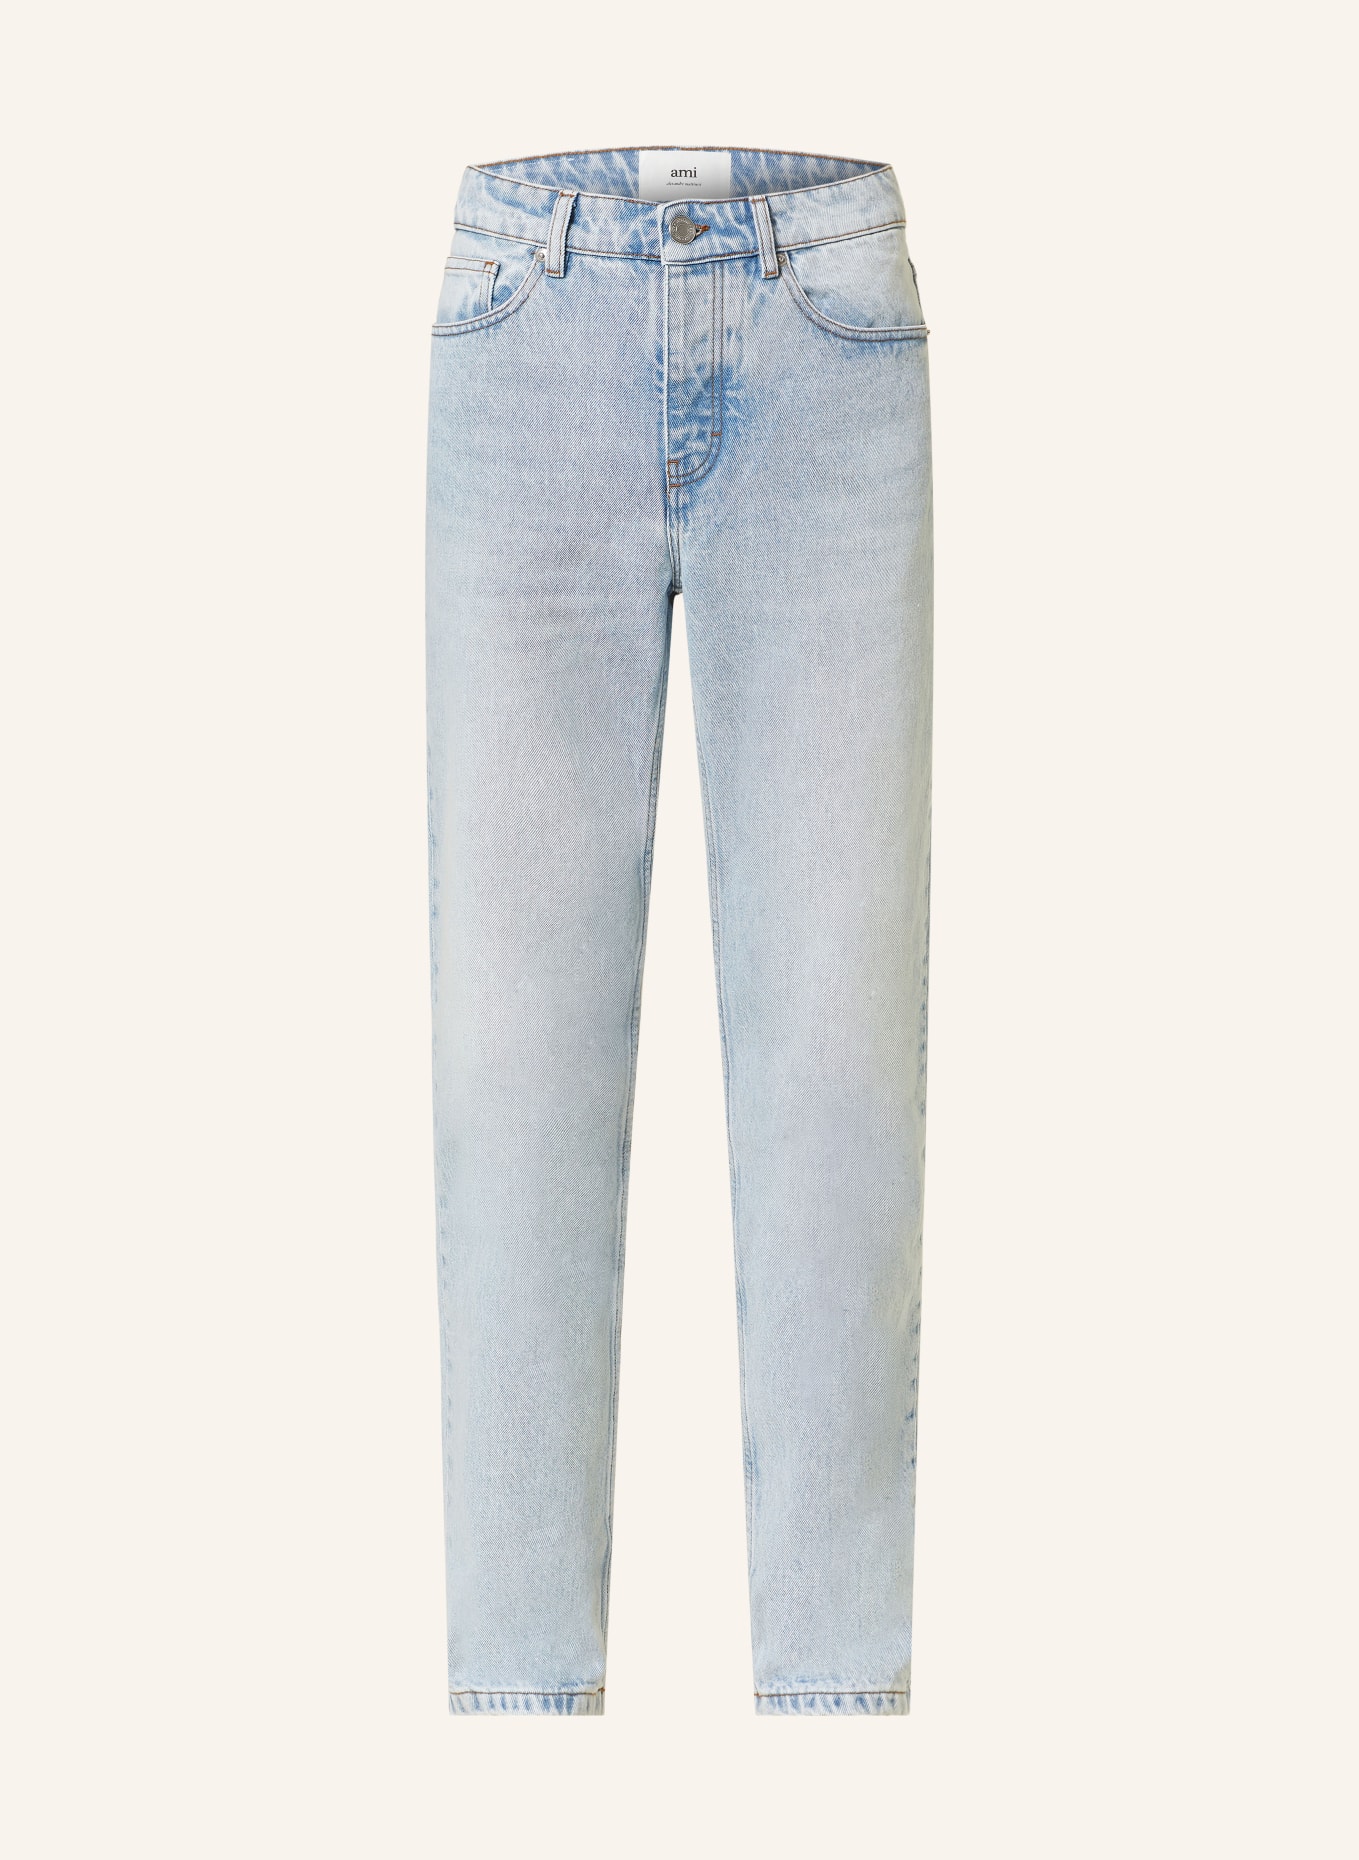 AMI PARIS Jeans regular fit, Color: 448 BLEACH (Image 1)